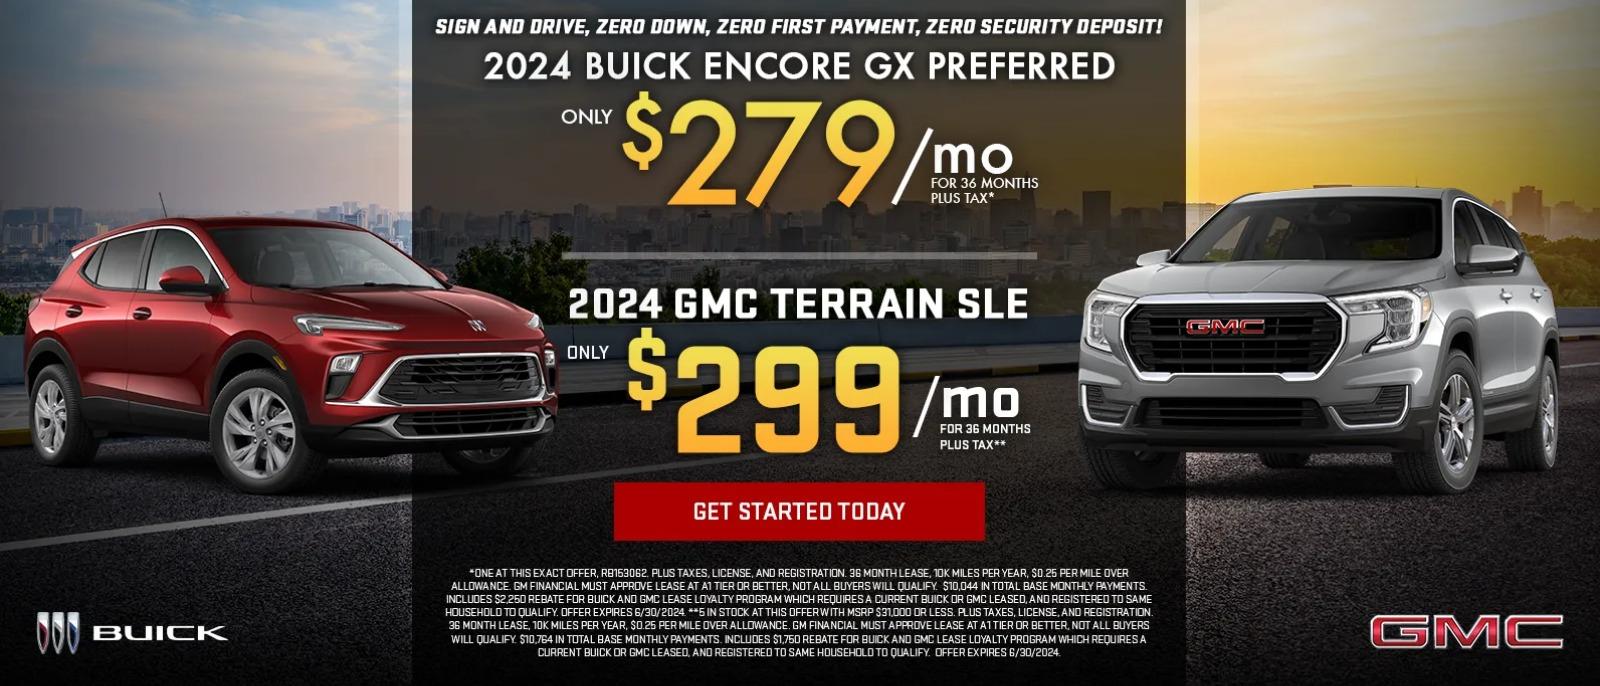 2024 Buick Encore GX Preferred/ 2024 GMC Terrain SLE Special